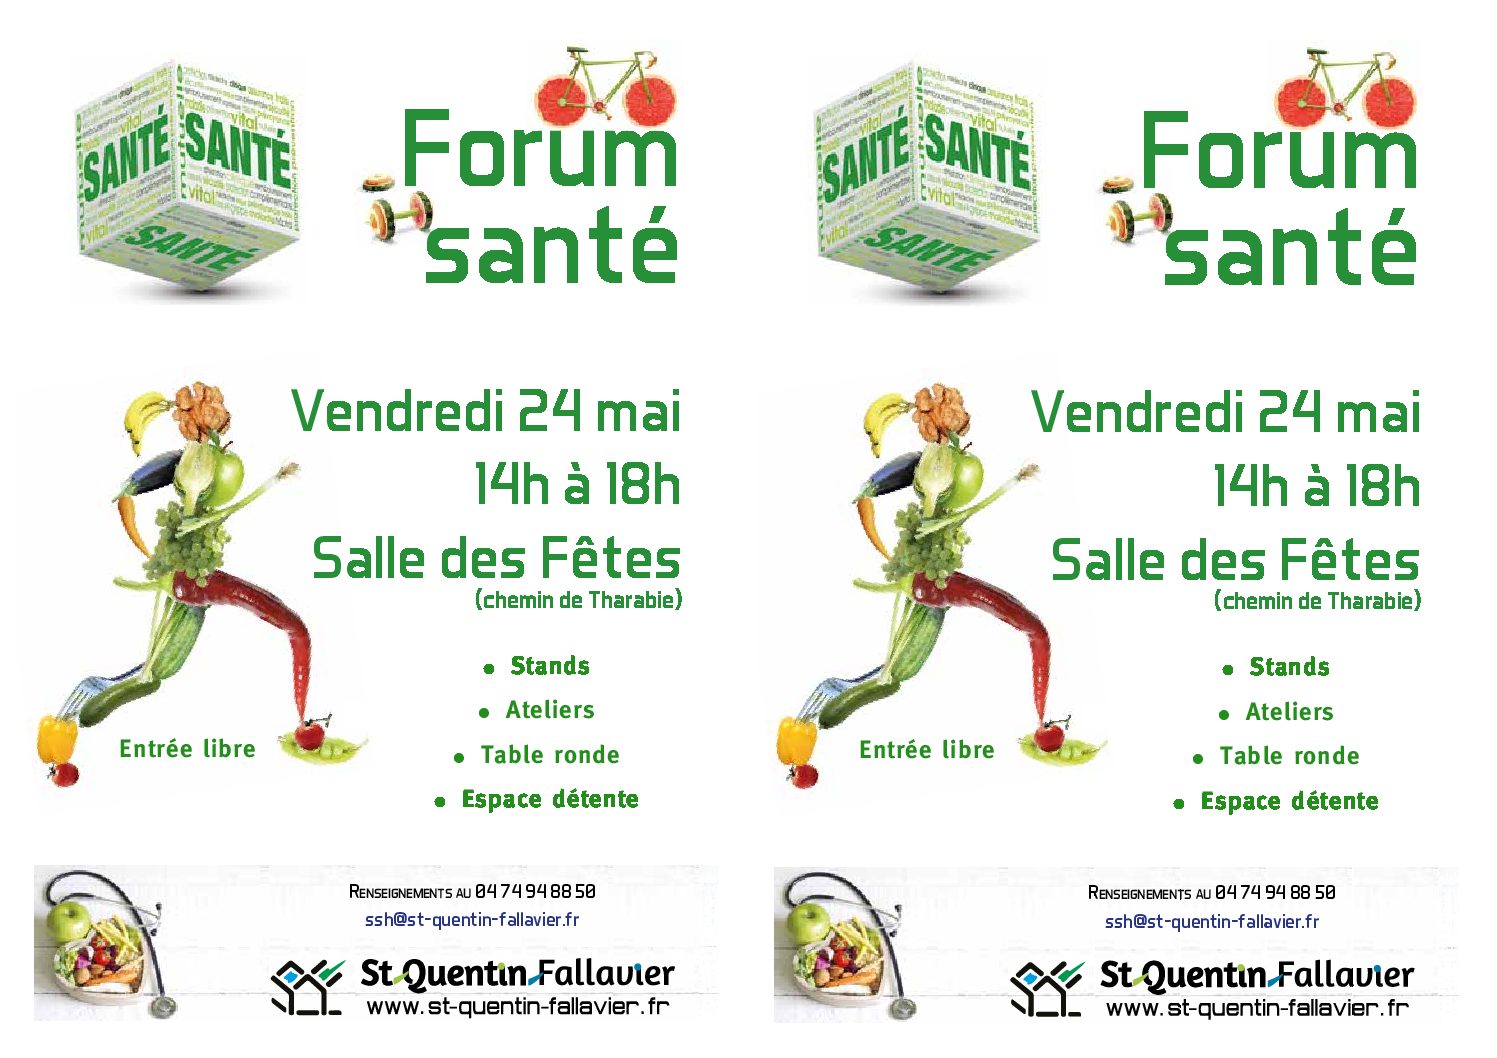 Forum santé St Quentin Fallavier